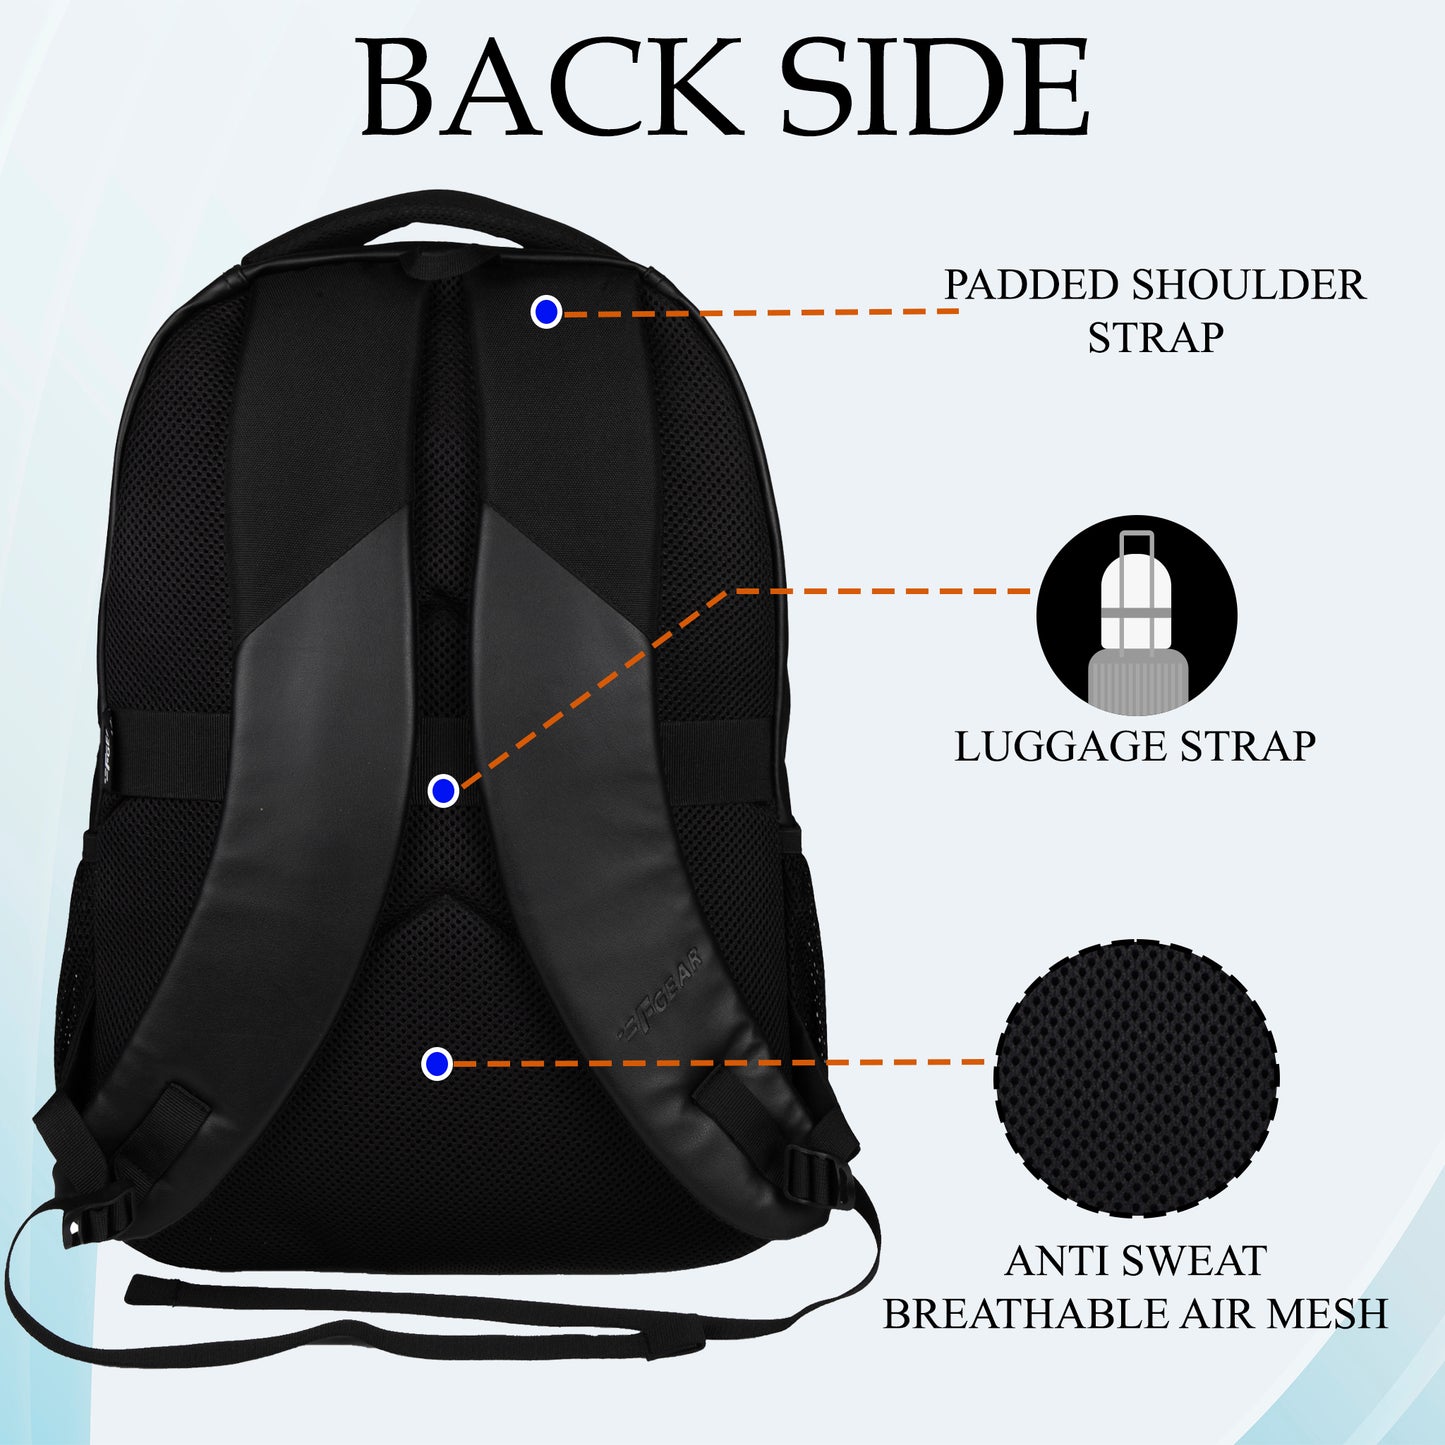 Vilcho 29L Black Laptop Backpack